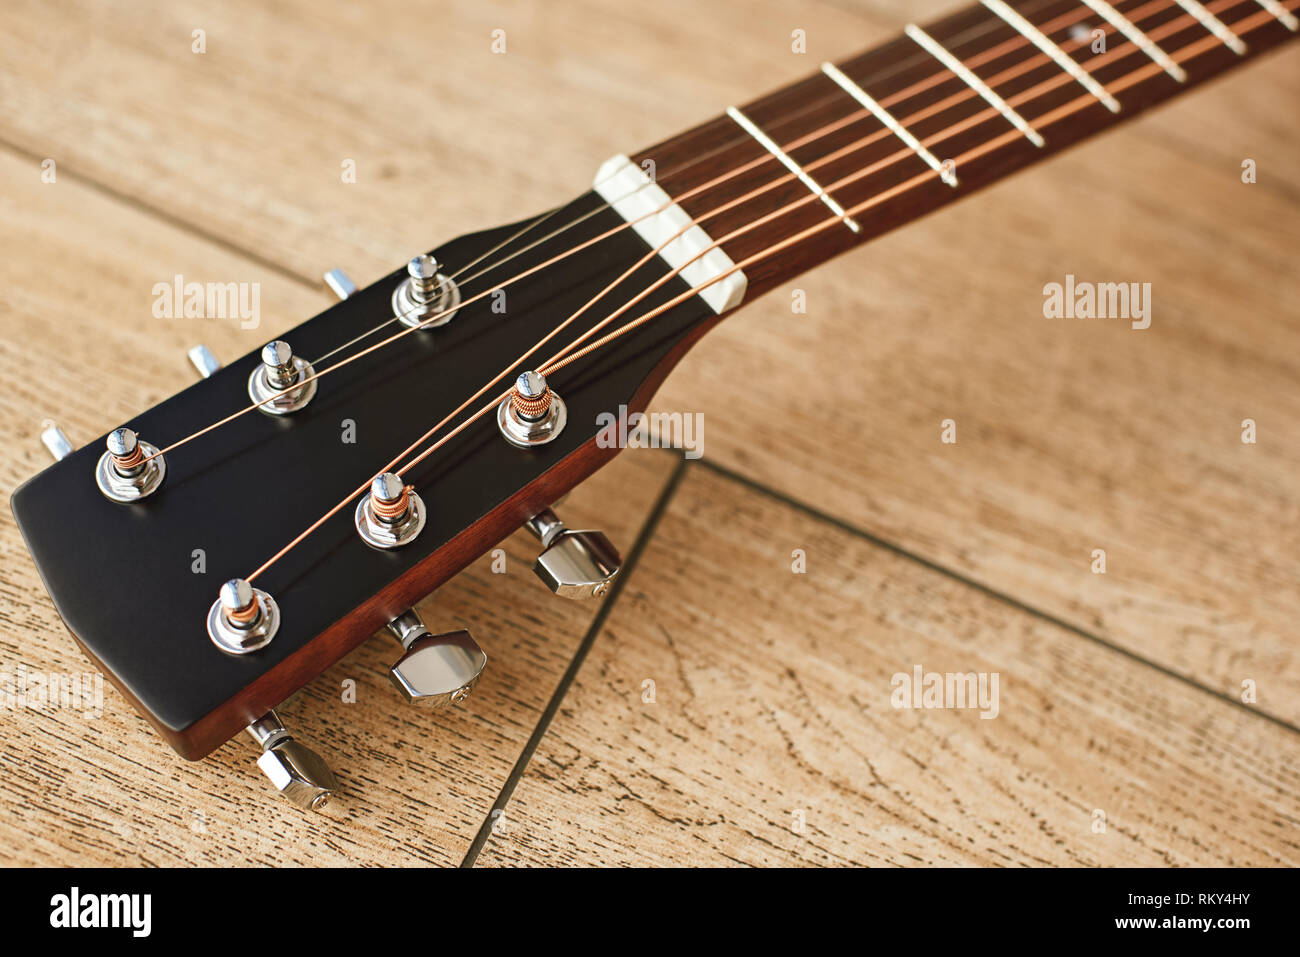 Parte superiore della chitarra. Vista ravvicinata della paletta per chitarra con i tasti tuning per regolare le corde di una chitarra. Sfondo di legno. Il concetto di musica. Strumenti musicali Foto Stock